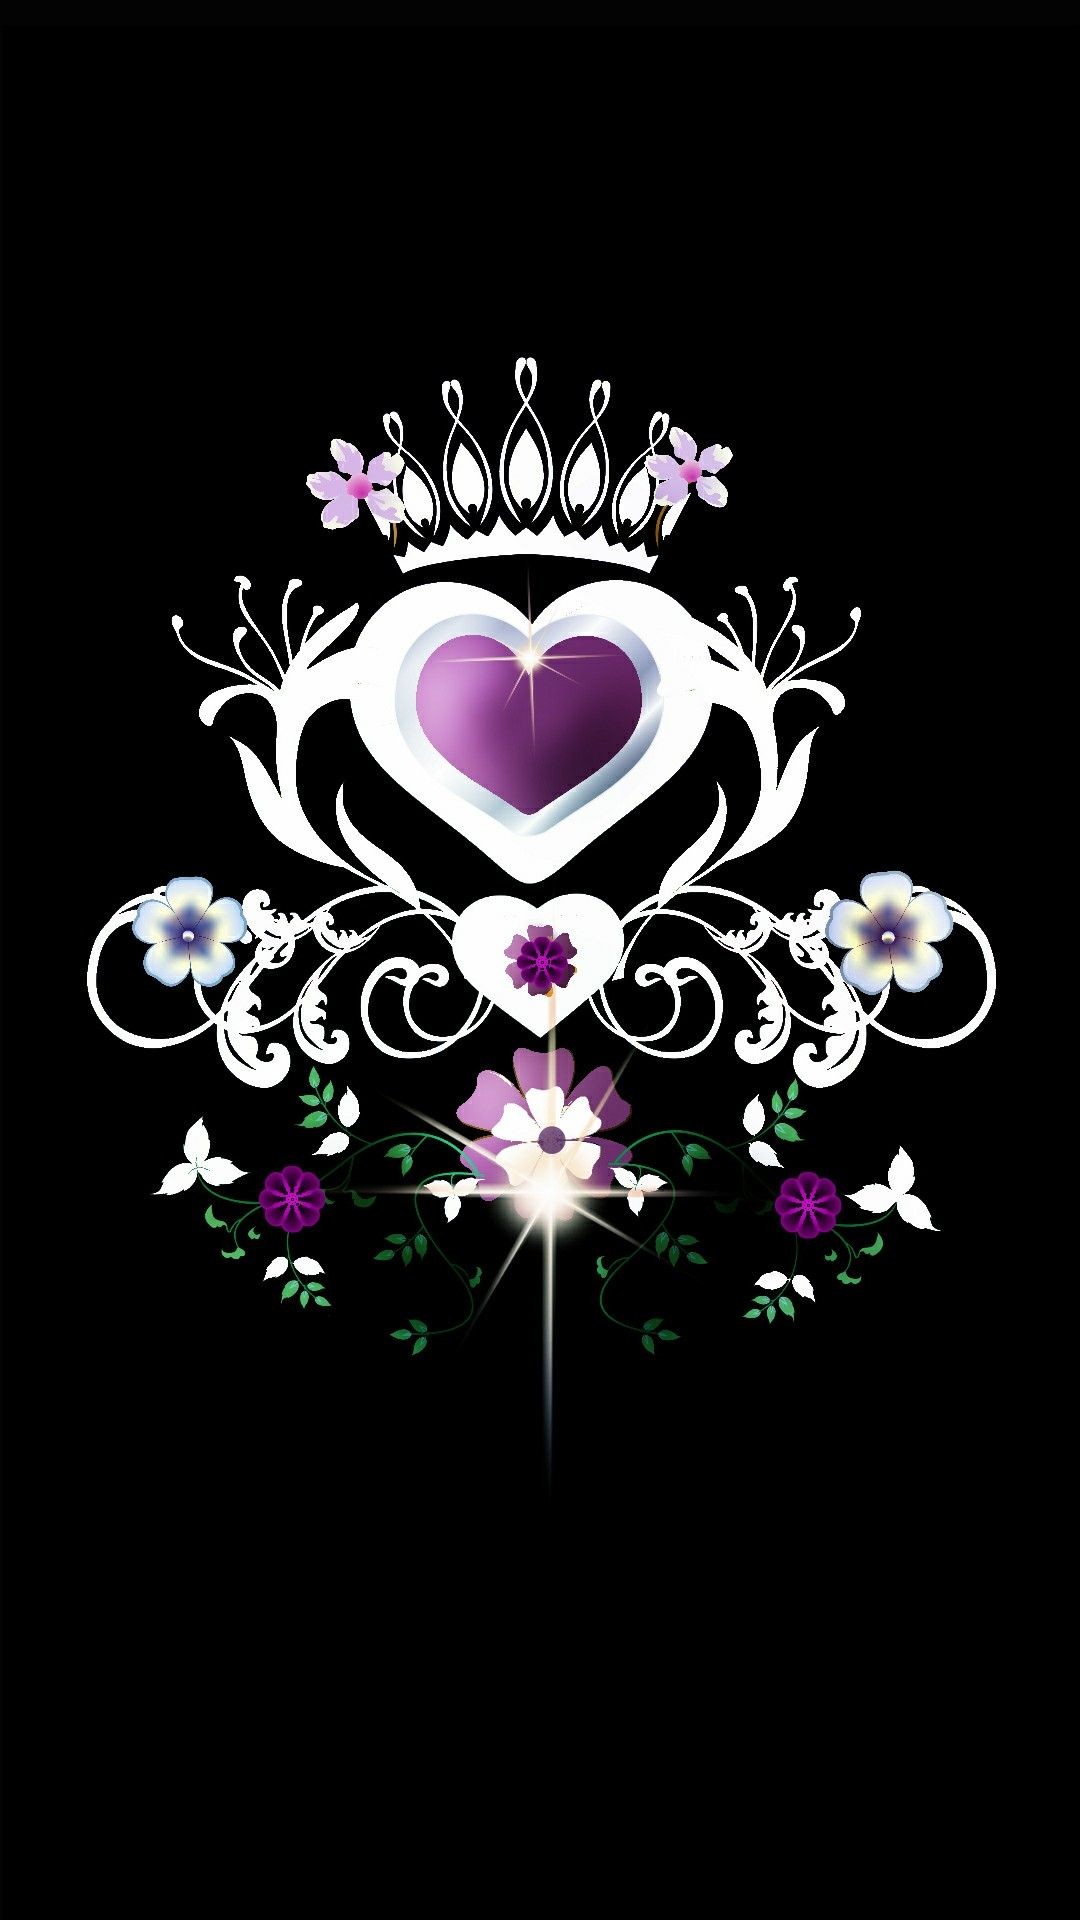 1080x1920 Crown on a purple heart